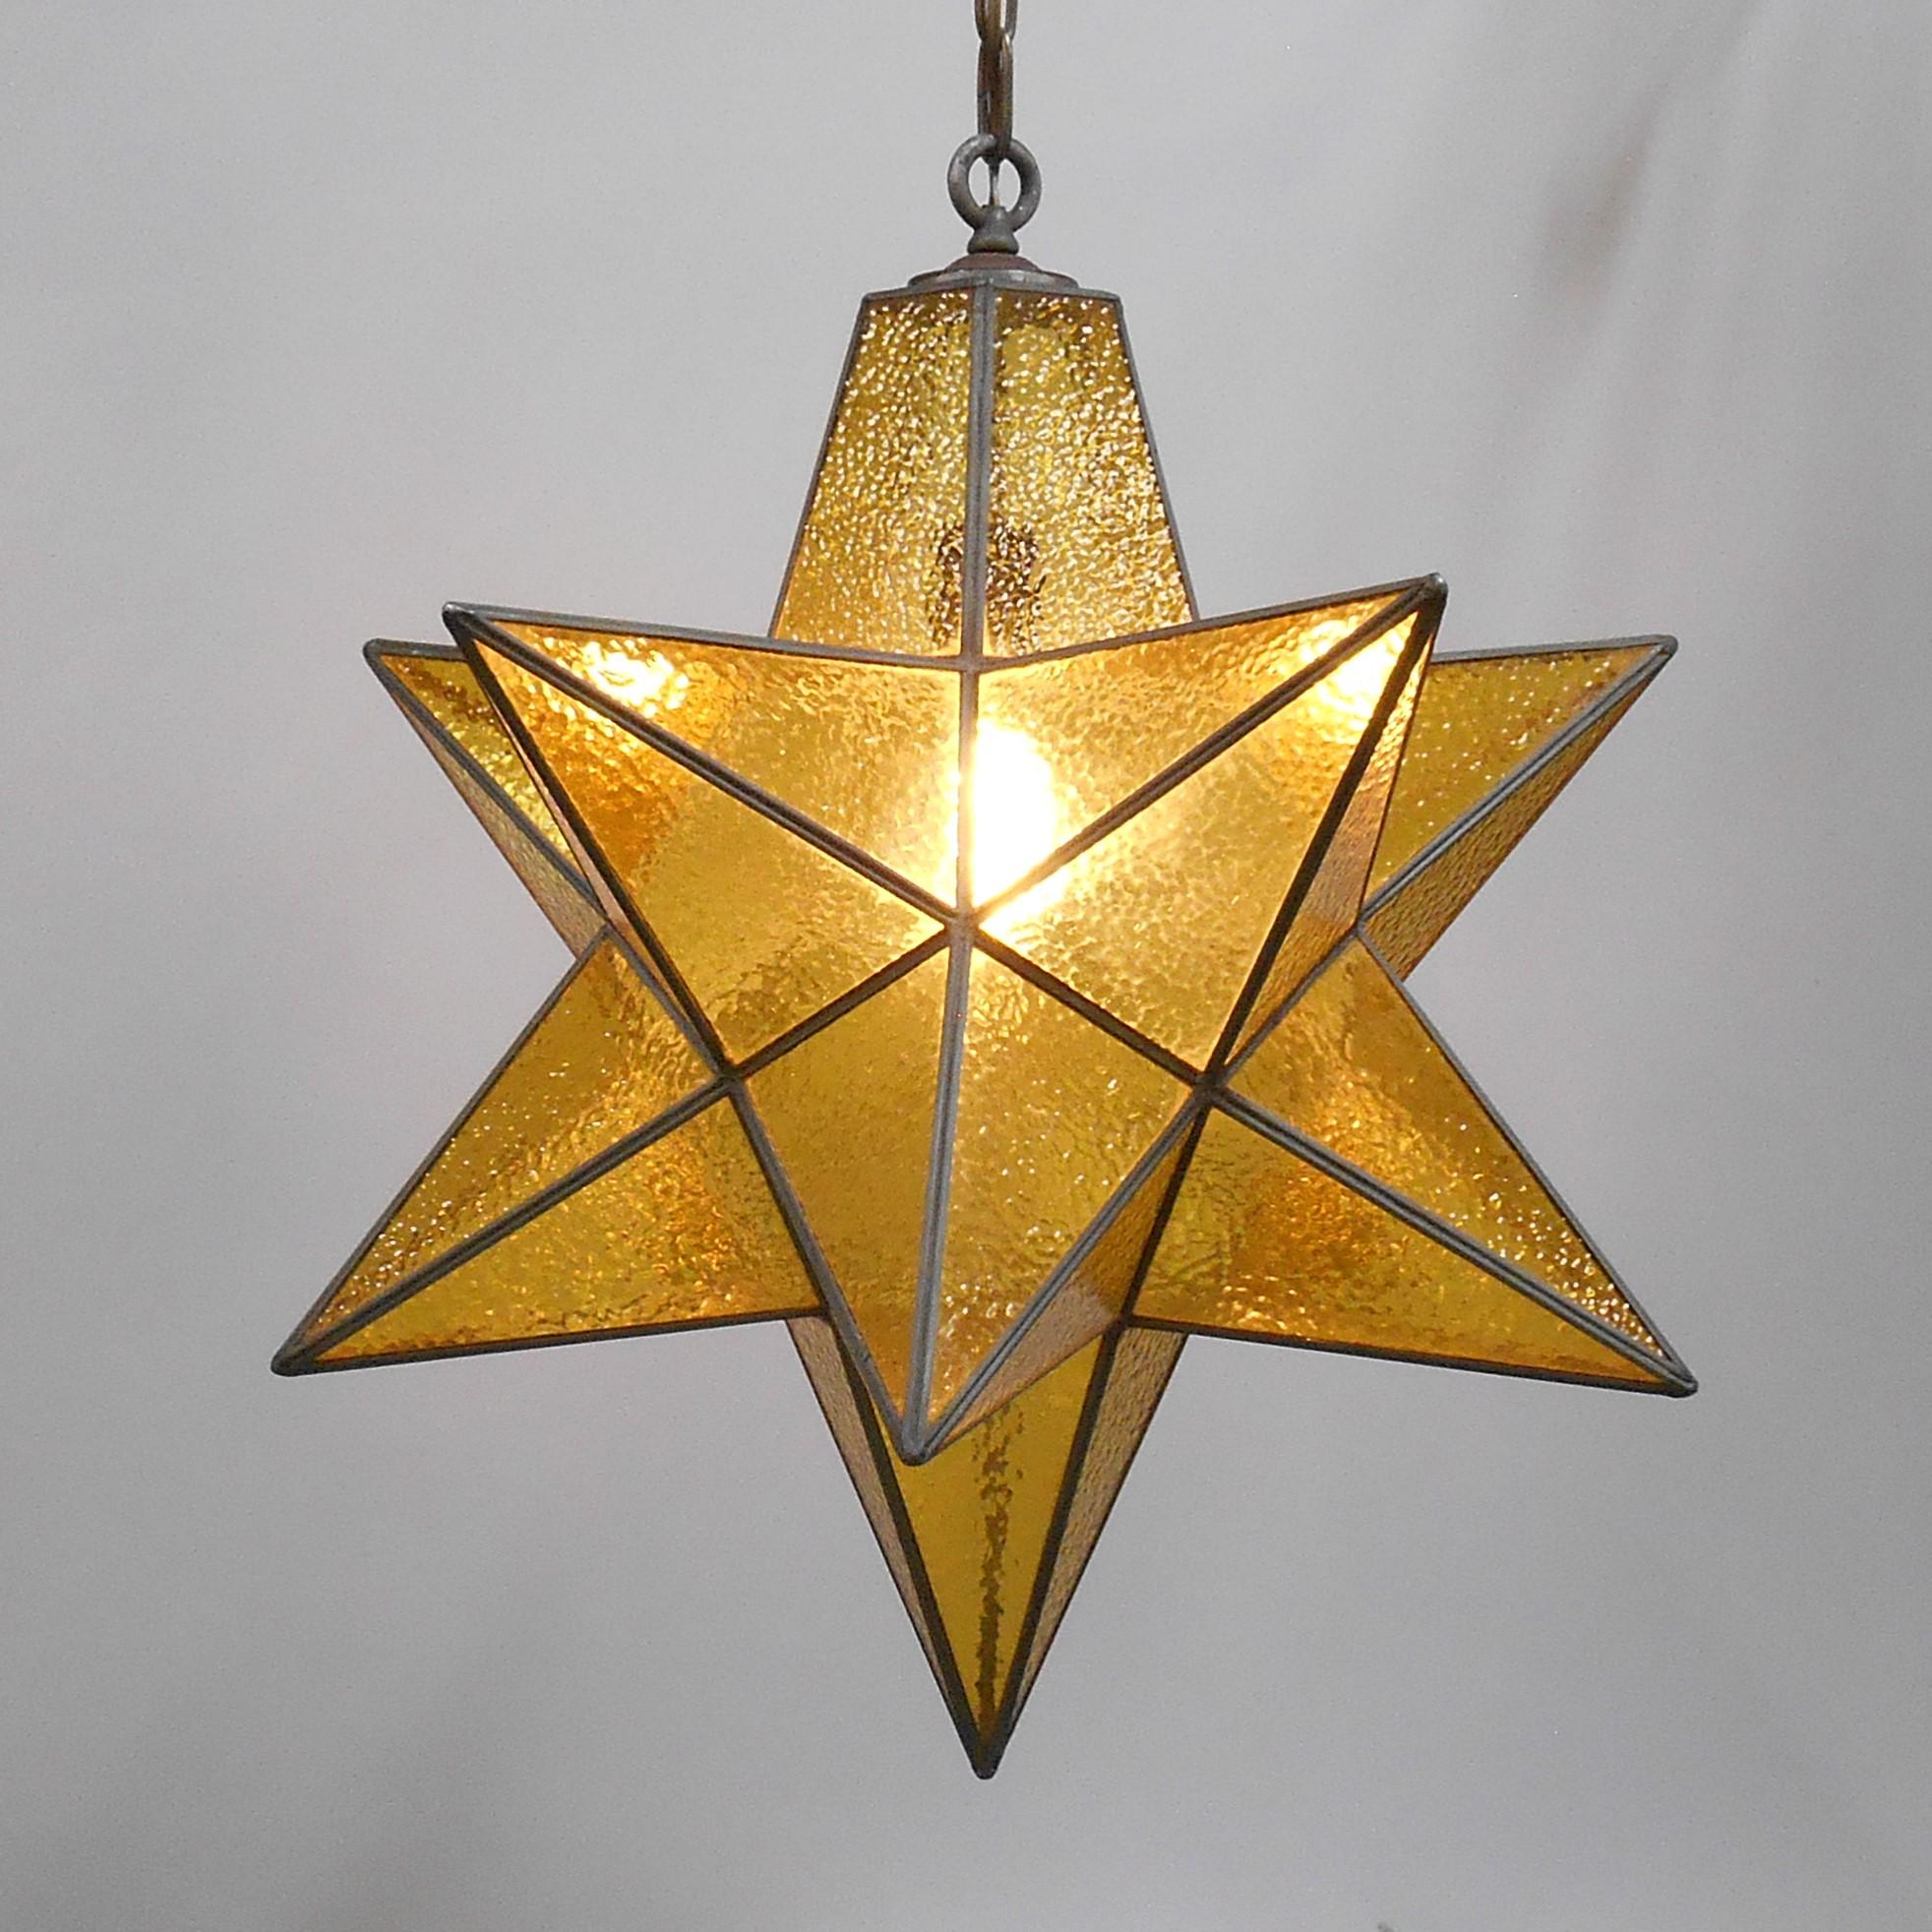 Un magnifique pendentif en forme d'étoile de Moravie avec du verre clair à galets d'or. Cette étoile surdimensionnée a une grande présence. Usure conforme à l'âge et à l'utilisation. Il y a une petite fissure dans le verre située sur la surface